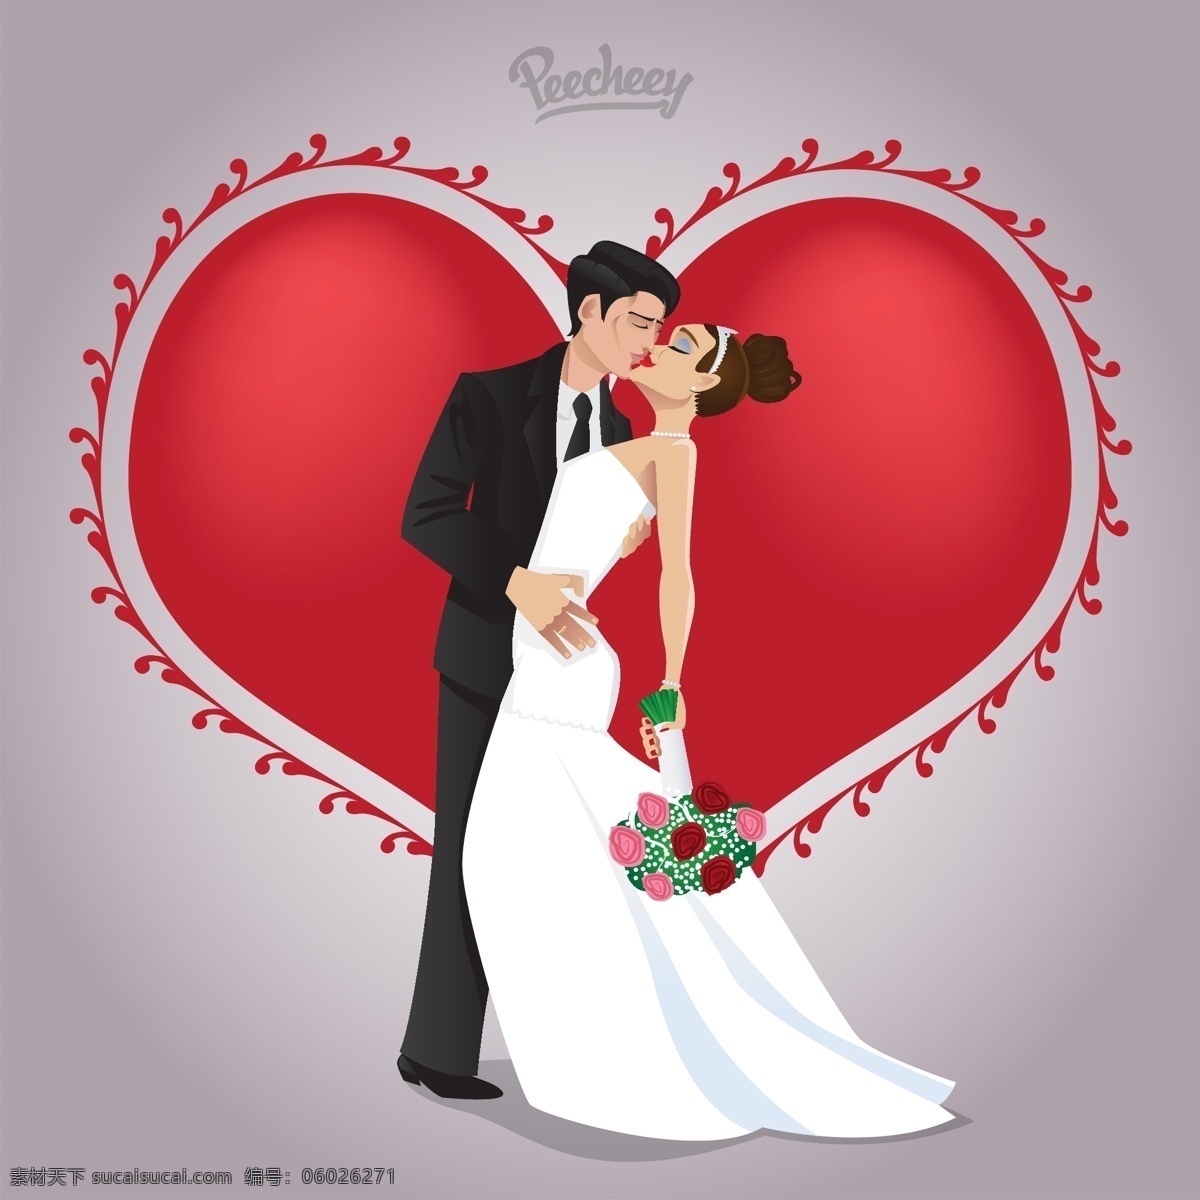 爱情 中 接吻 婚礼 背景壁纸 卡通和人物 庆典和聚会 设计元素 花卉和漩涡 模板和模型 孩子